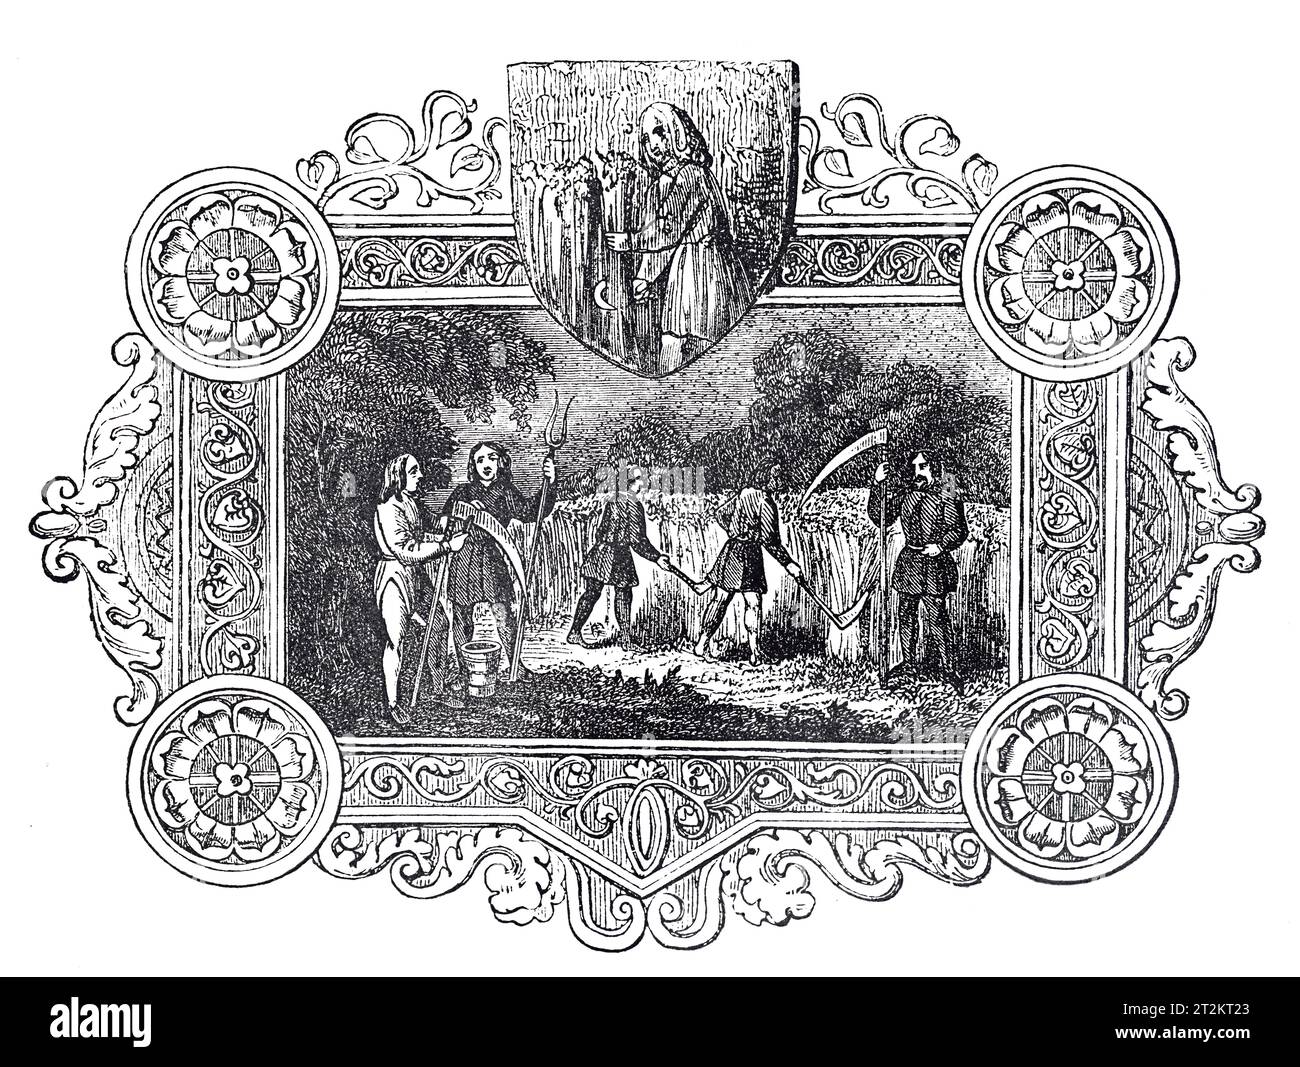 Emblemas sajones del mes de agosto. Ilustración en blanco y negro de la 'Vieja Inglaterra' publicada por James Sangster en 1860. Foto de stock